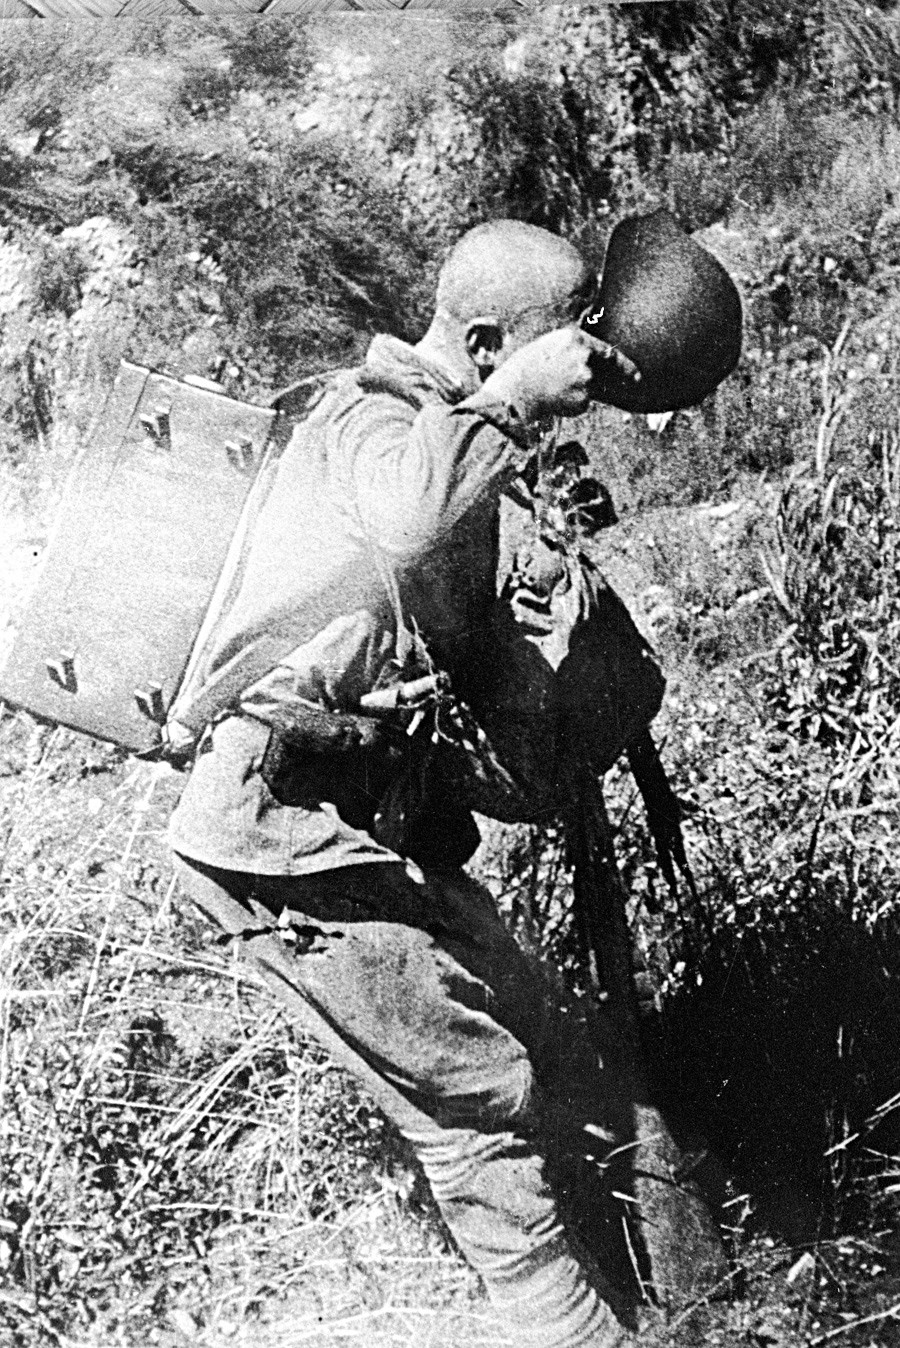 Војник после борбе пије воду из шлема. Трећи белоруски фронт, Други светски рат.